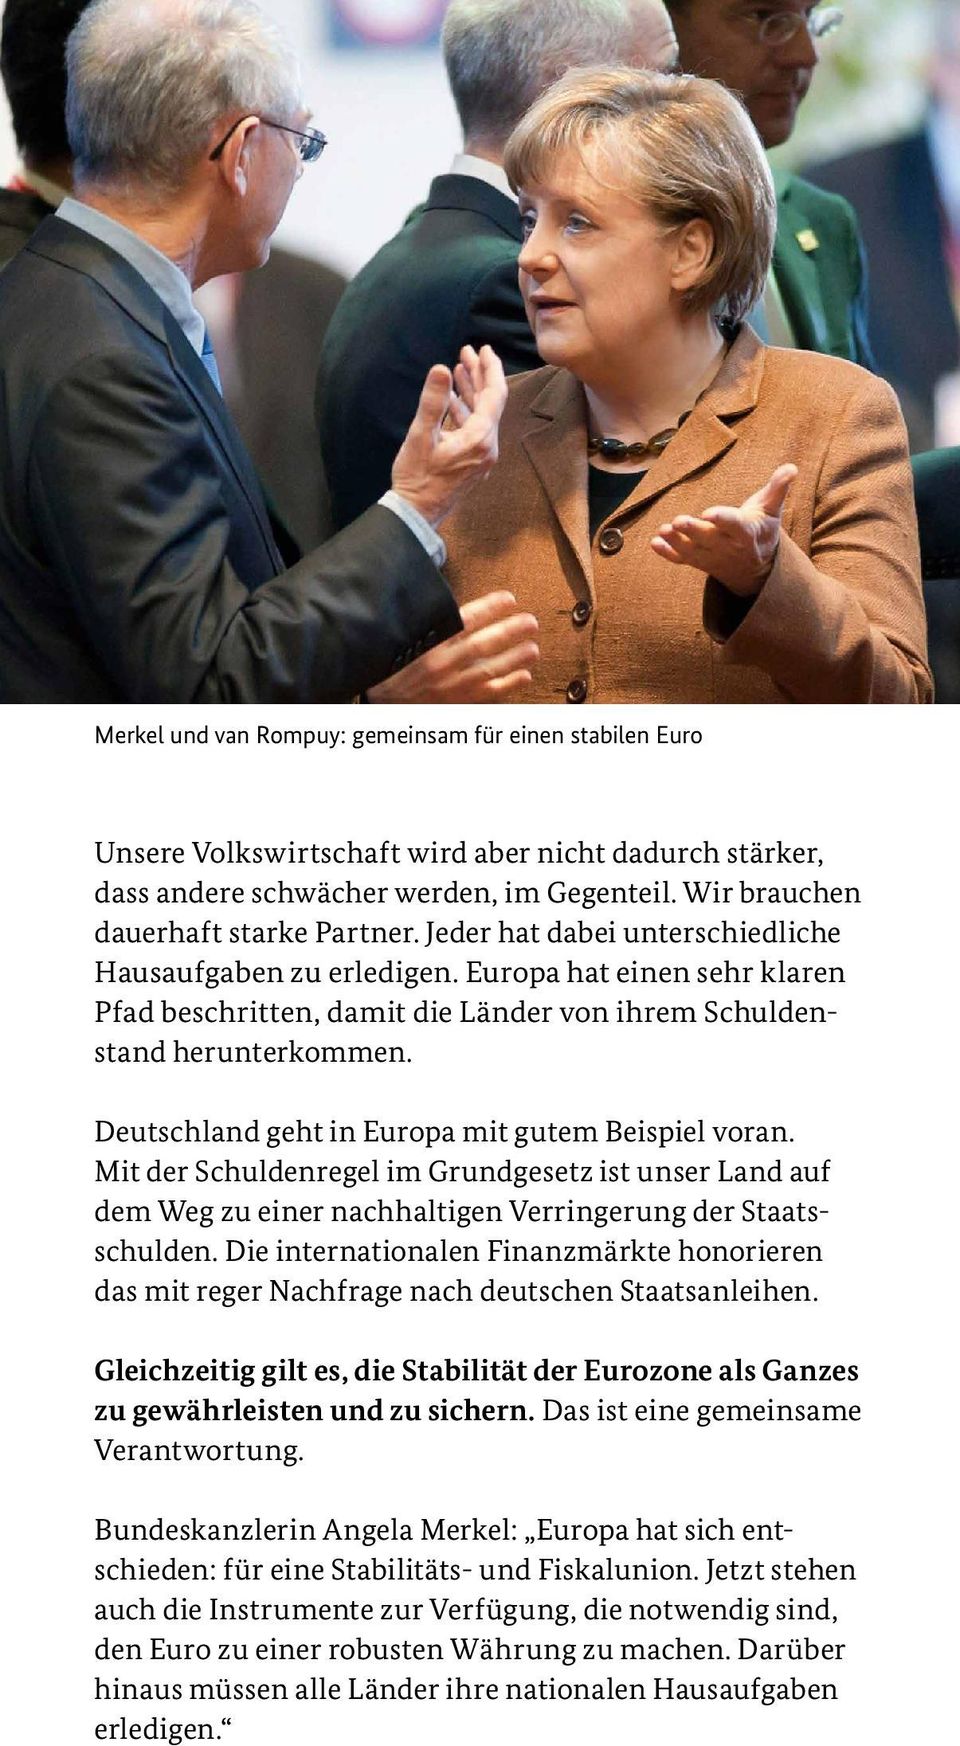 Deutschland geht in Europa mit gutem Beispiel voran. Mit der Schuldenregel im Grundgesetz ist unser Land auf dem Weg zu einer nachhaltigen Verringerung der Staats schulden.